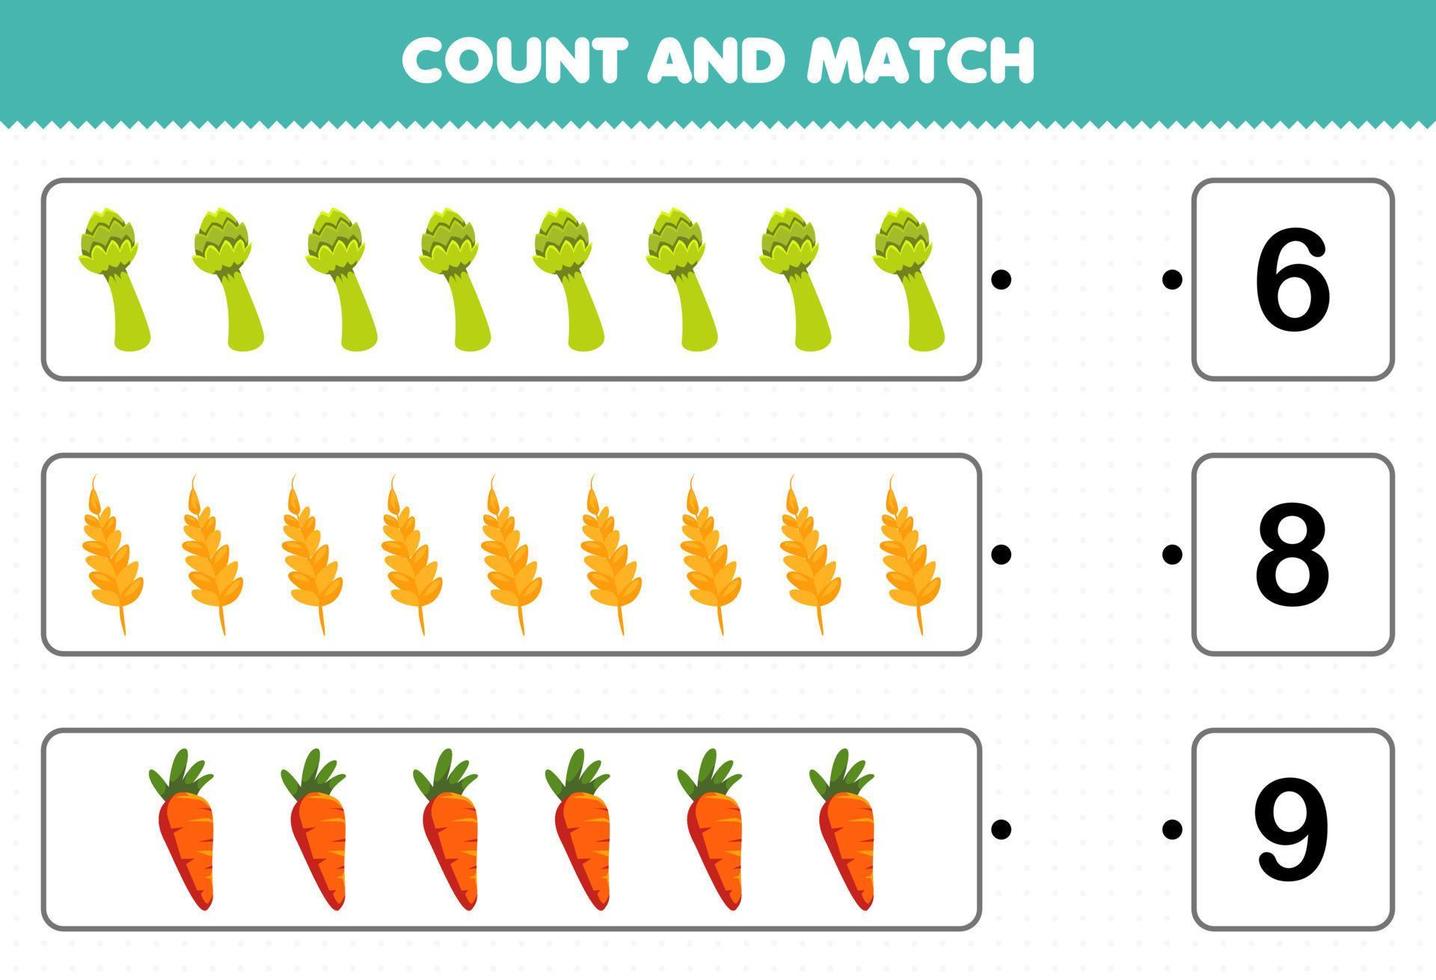 juego educativo para niños contar y combinar contar el número de verduras de dibujos animados espárragos trigo zanahoria y combinar con los números correctos hoja de trabajo imprimible vector